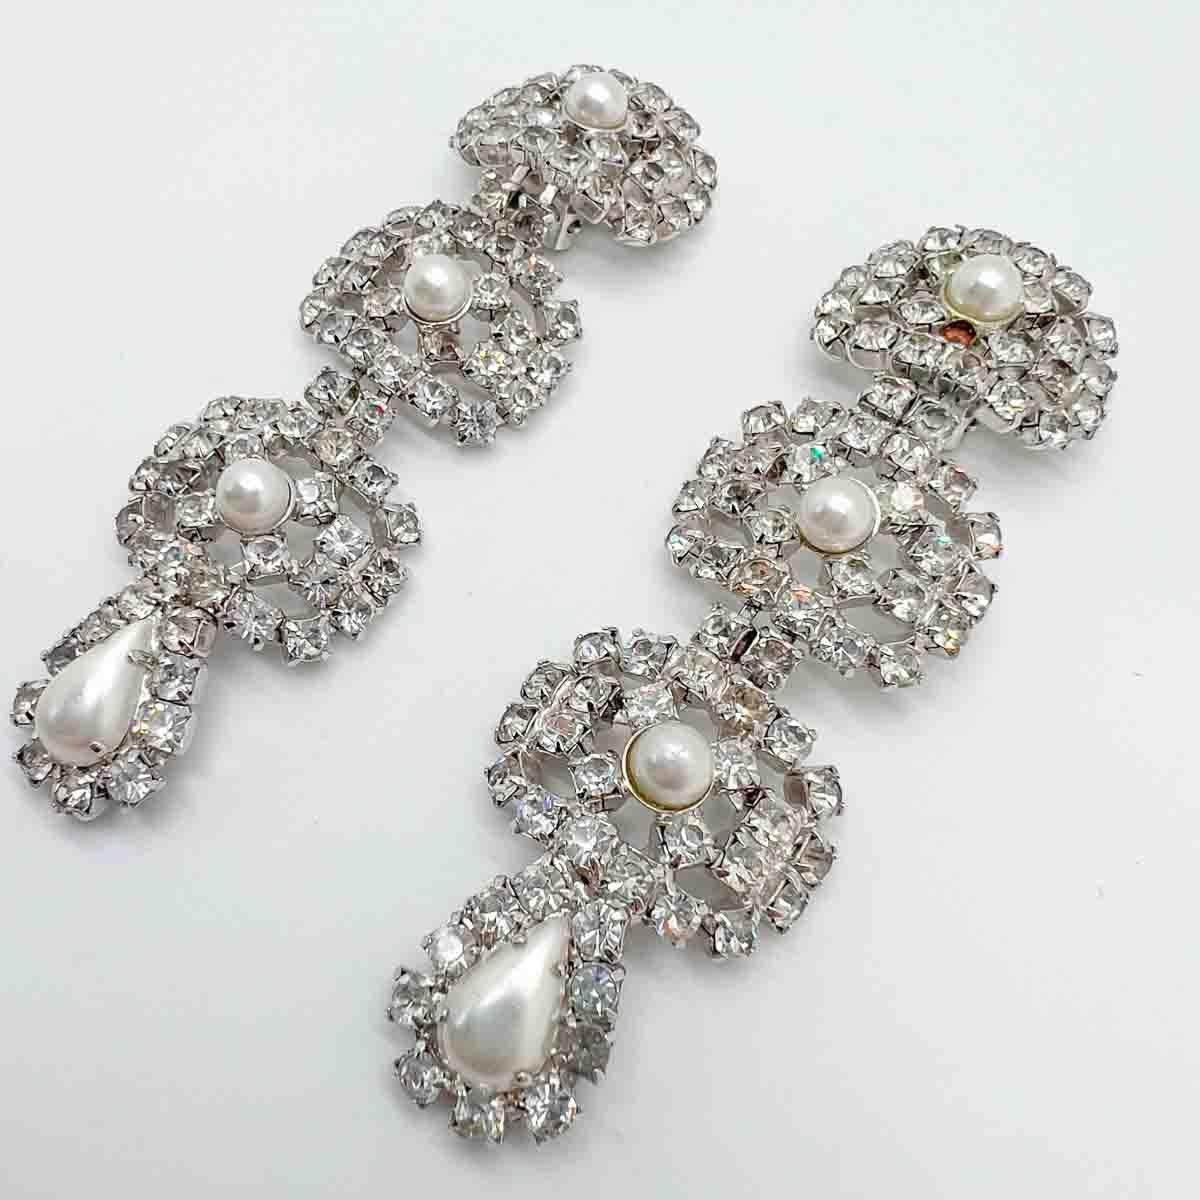 Ein Paar Vintage Crystal & Pearl Drop Ohrringe. Eine traumhafte Kombination, die den Look von Diamanten und Perlen verkörpert. Höchstwahrscheinlich eine Couture-Kreation, wenn auch unsigniert, sind diese außergewöhnlichen Schmuckstücke das